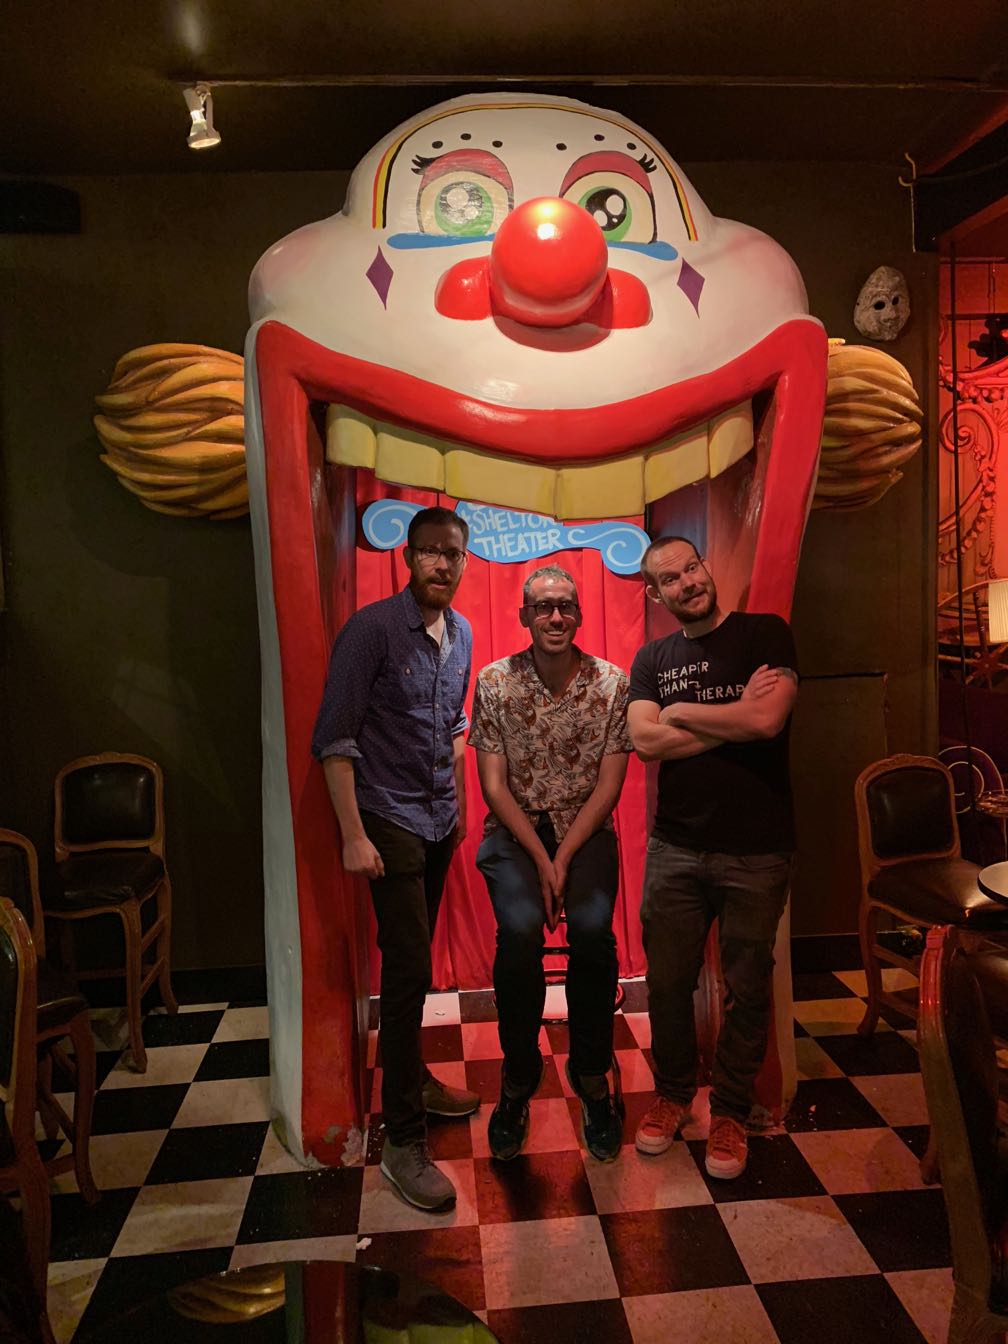 Scott Simpson, Ben Jennings, and Jon Allen standing inside a bizarre clown in a dimly lit theater lobby.